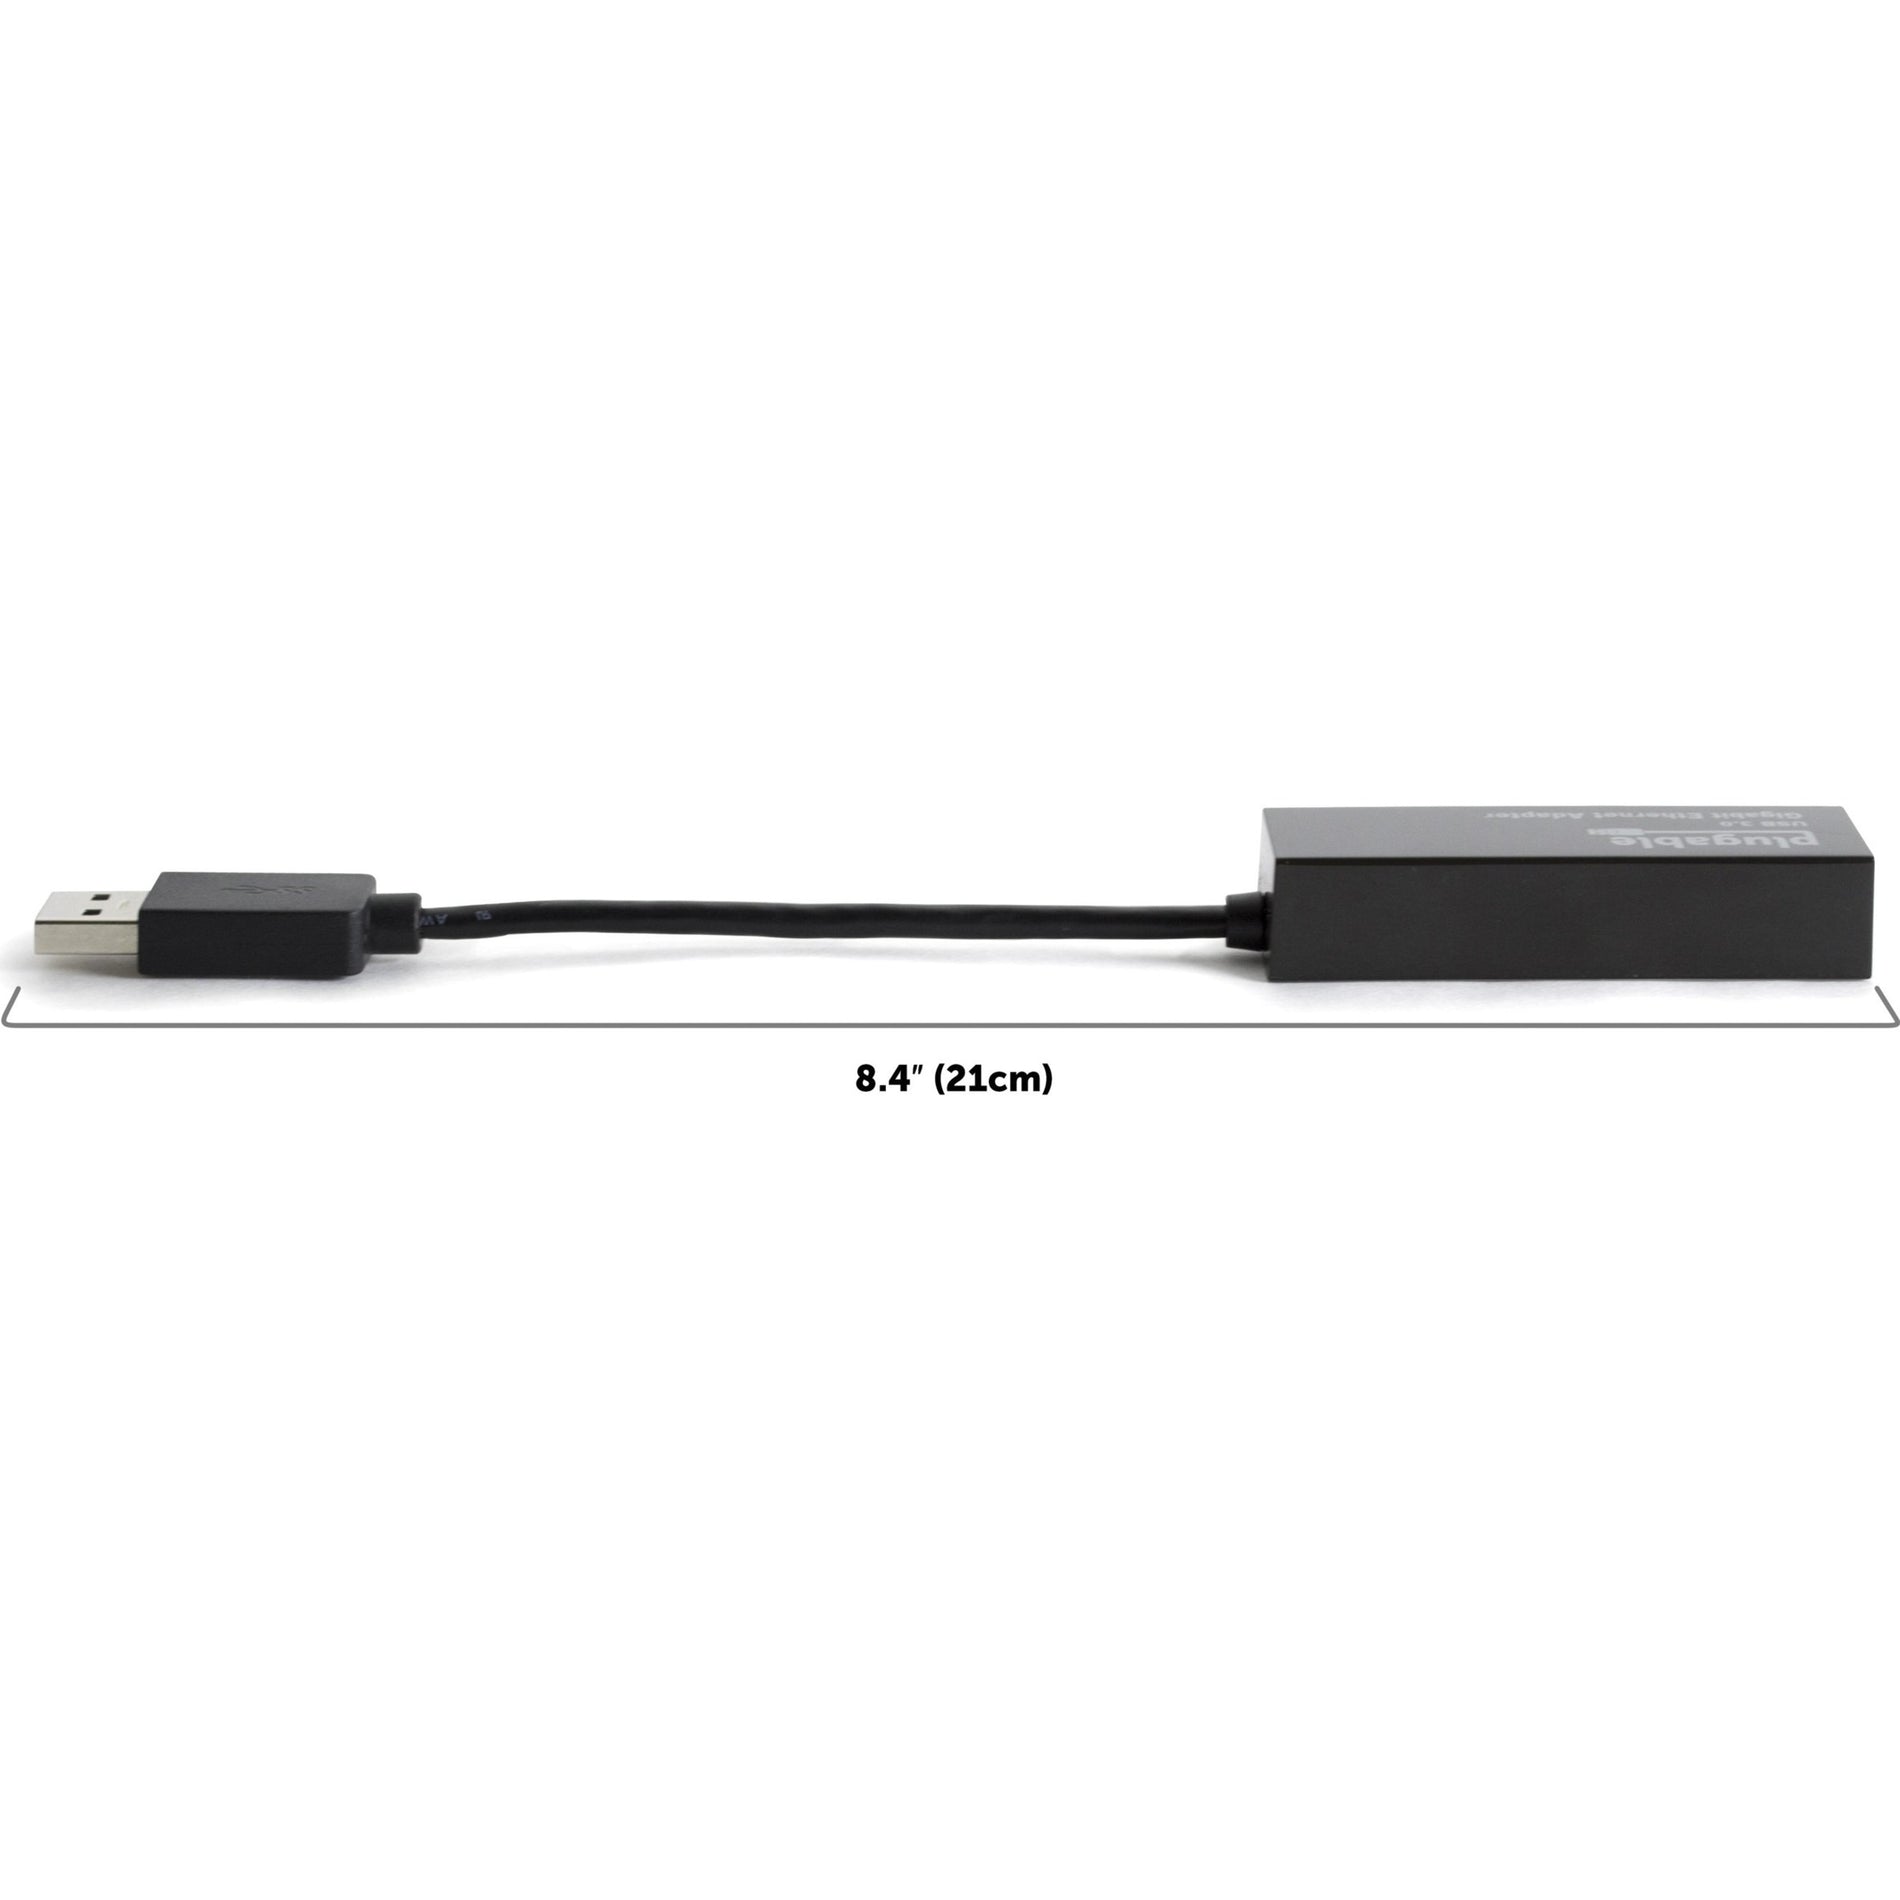 ブランド名: Plugable  USB3-E1000 -> USB3-E1000 USB -> USB Ethernet Adapter -> イーサネットアダプタ USB -> USB 3.0 -> 3.0 Gigabit Ethernet -> ギガビットイーサネット High-Speed -> ハイスピード Data Transfer -> データ転送